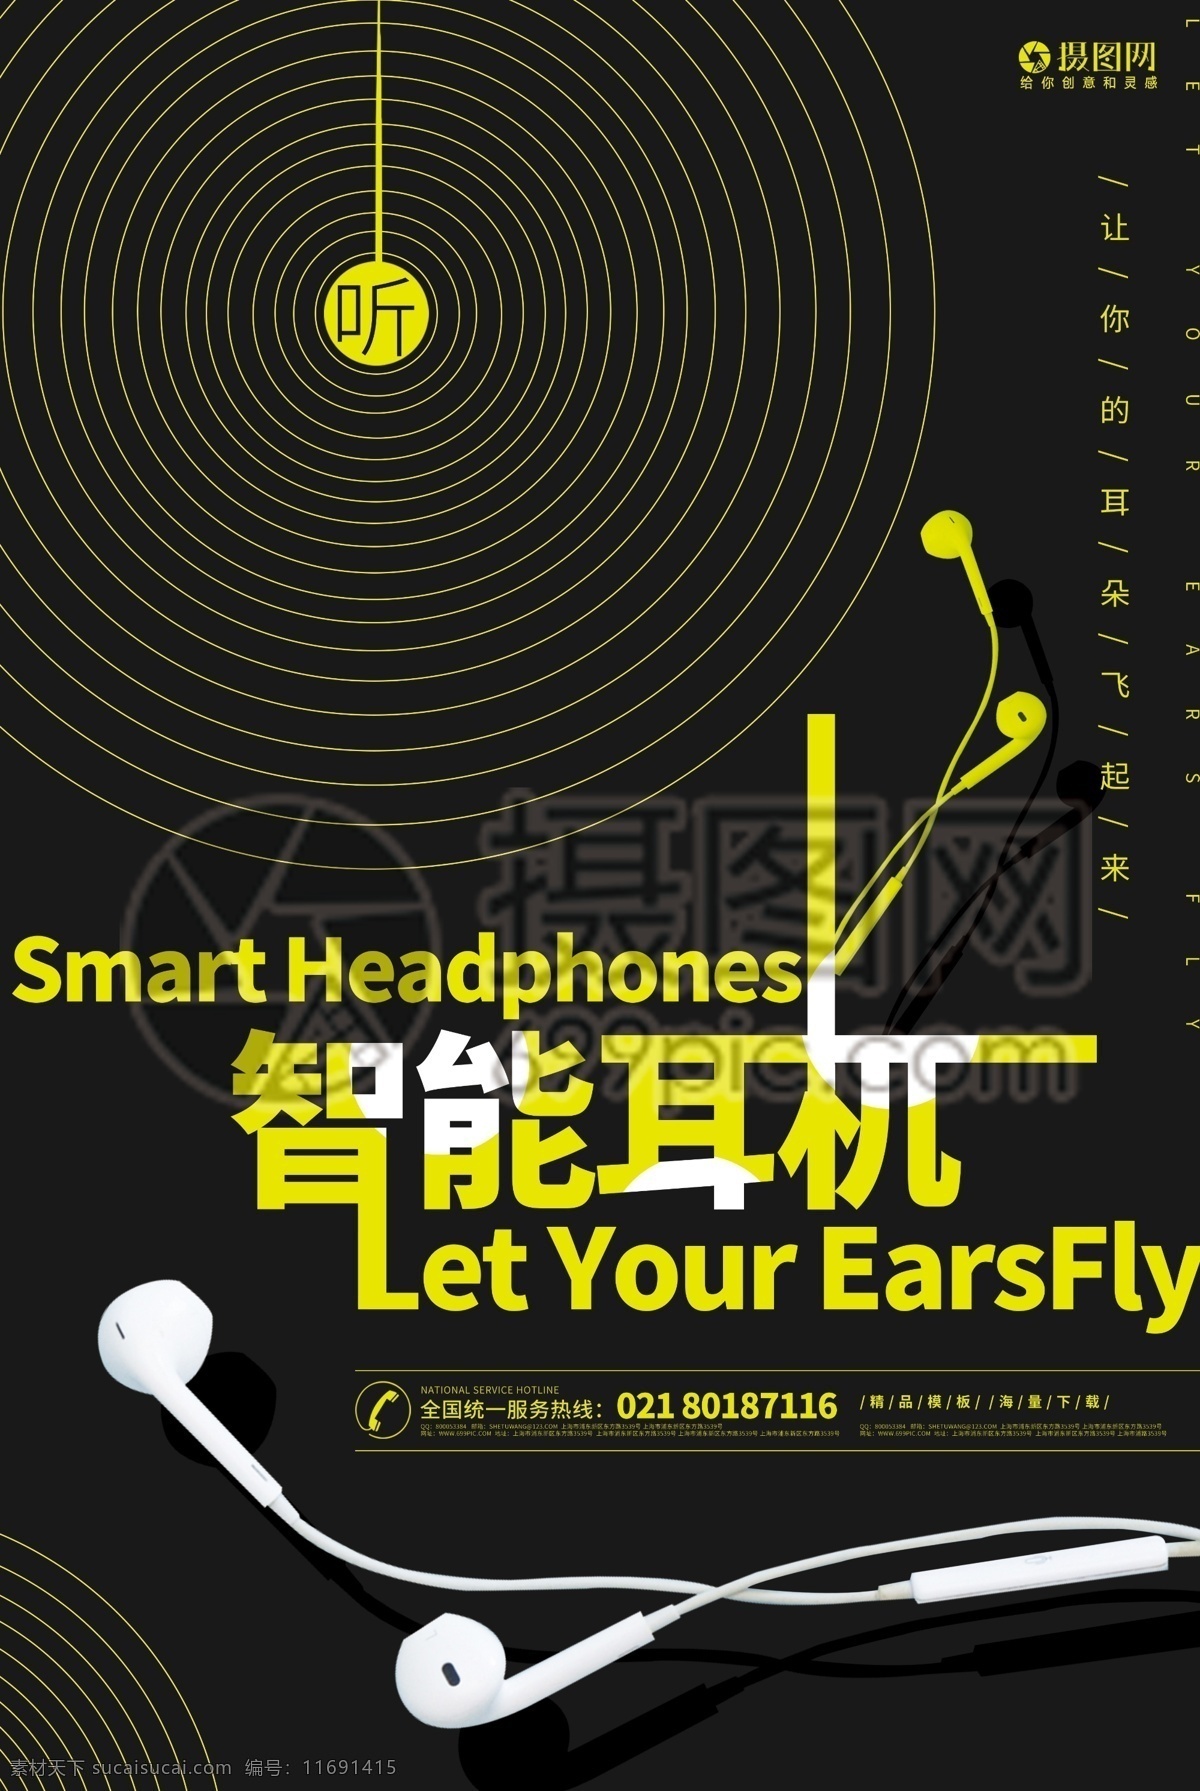 品质耳机 智能耳机 电子产品 耳机 耳机促销 耳机海报 音乐音响 黑色 智能 听 海报 宣传海报